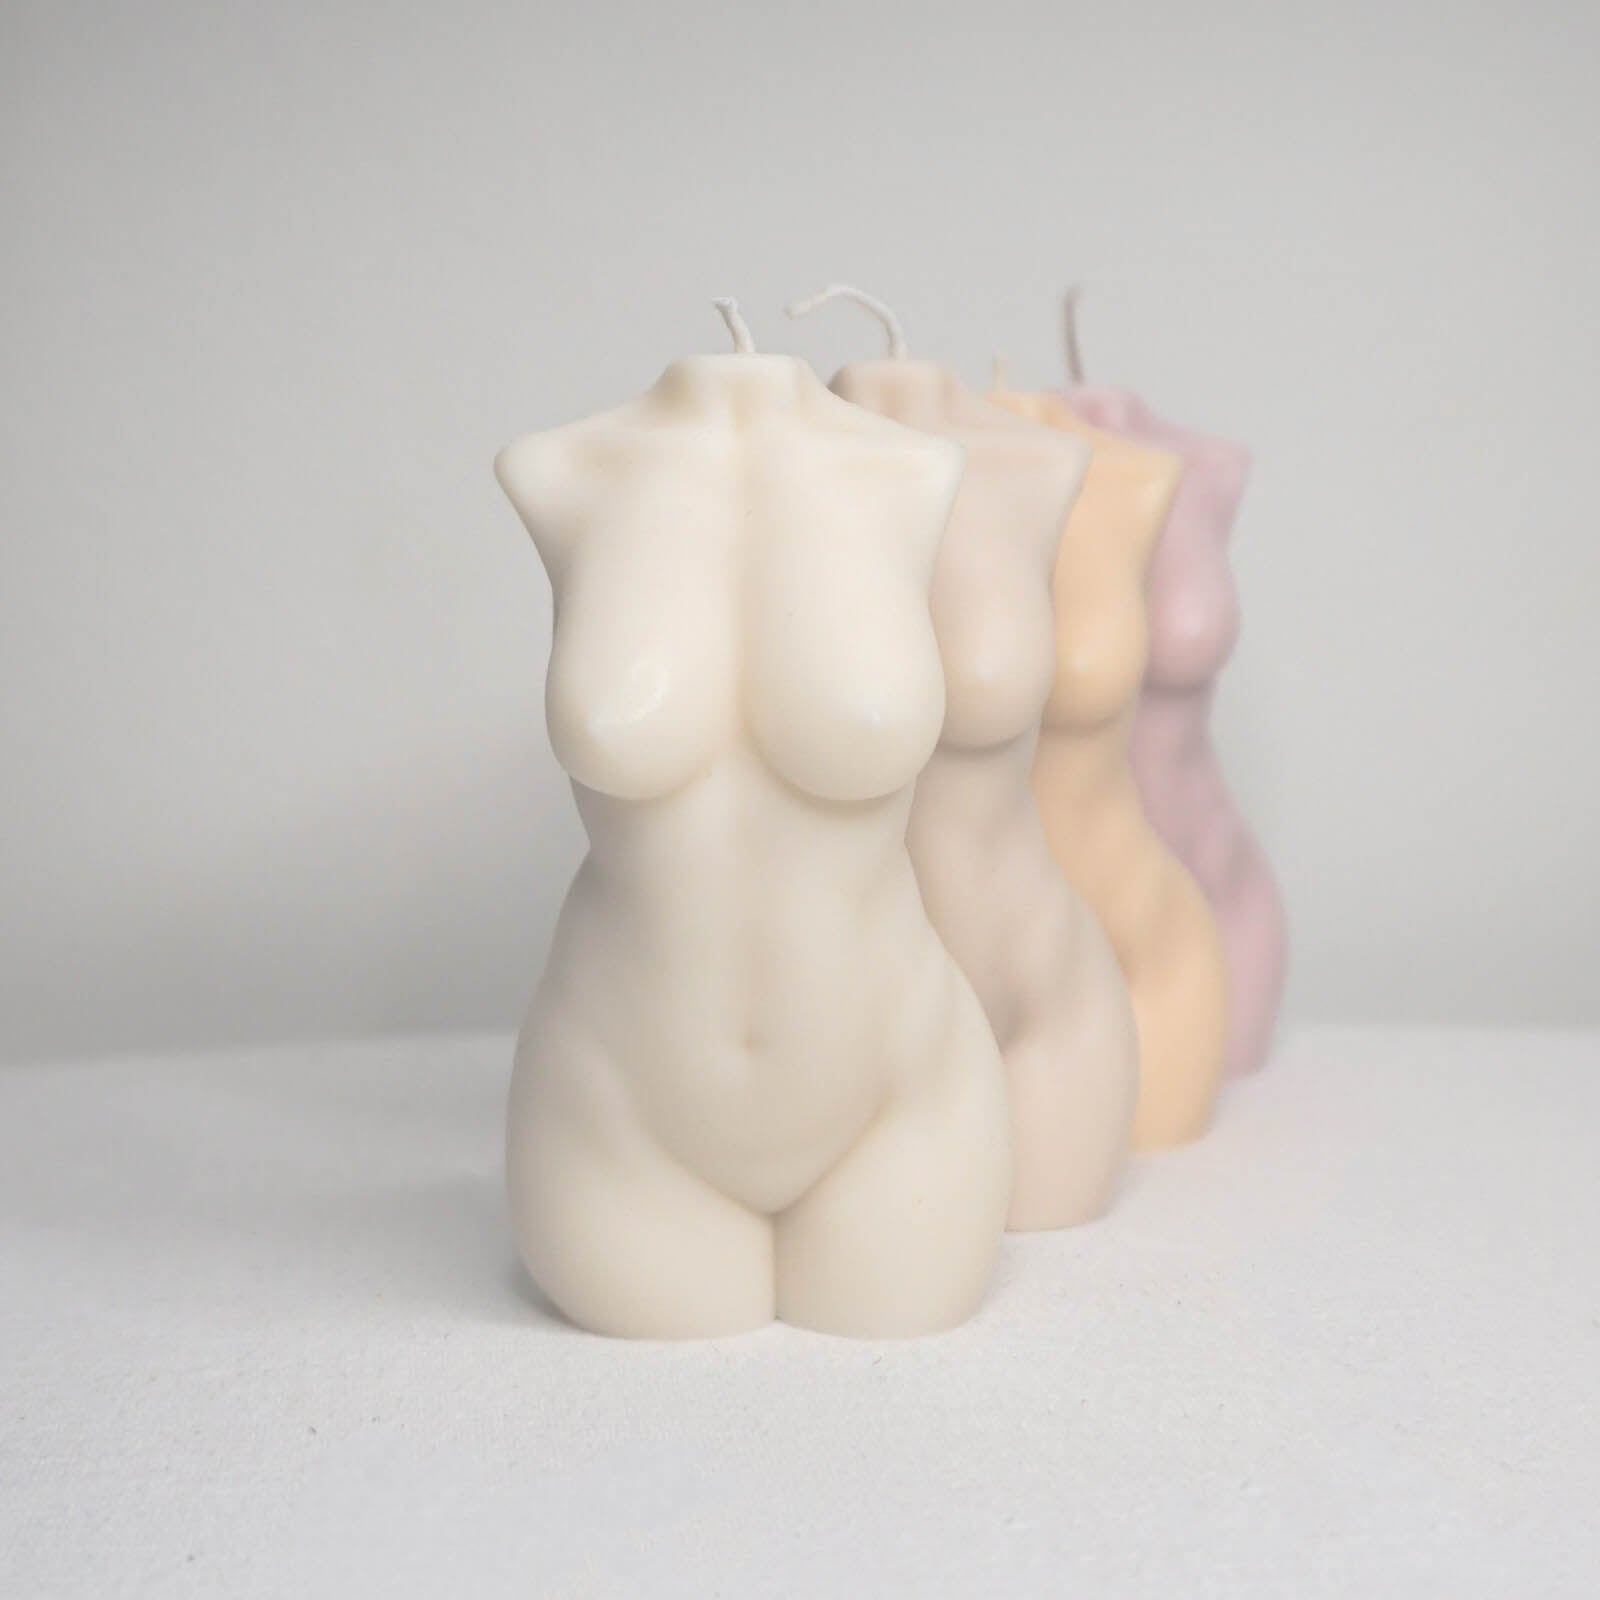 Makagi - Zuri Pearl Sojakerze Kollektion - Körper Kerze - Frauenfigur